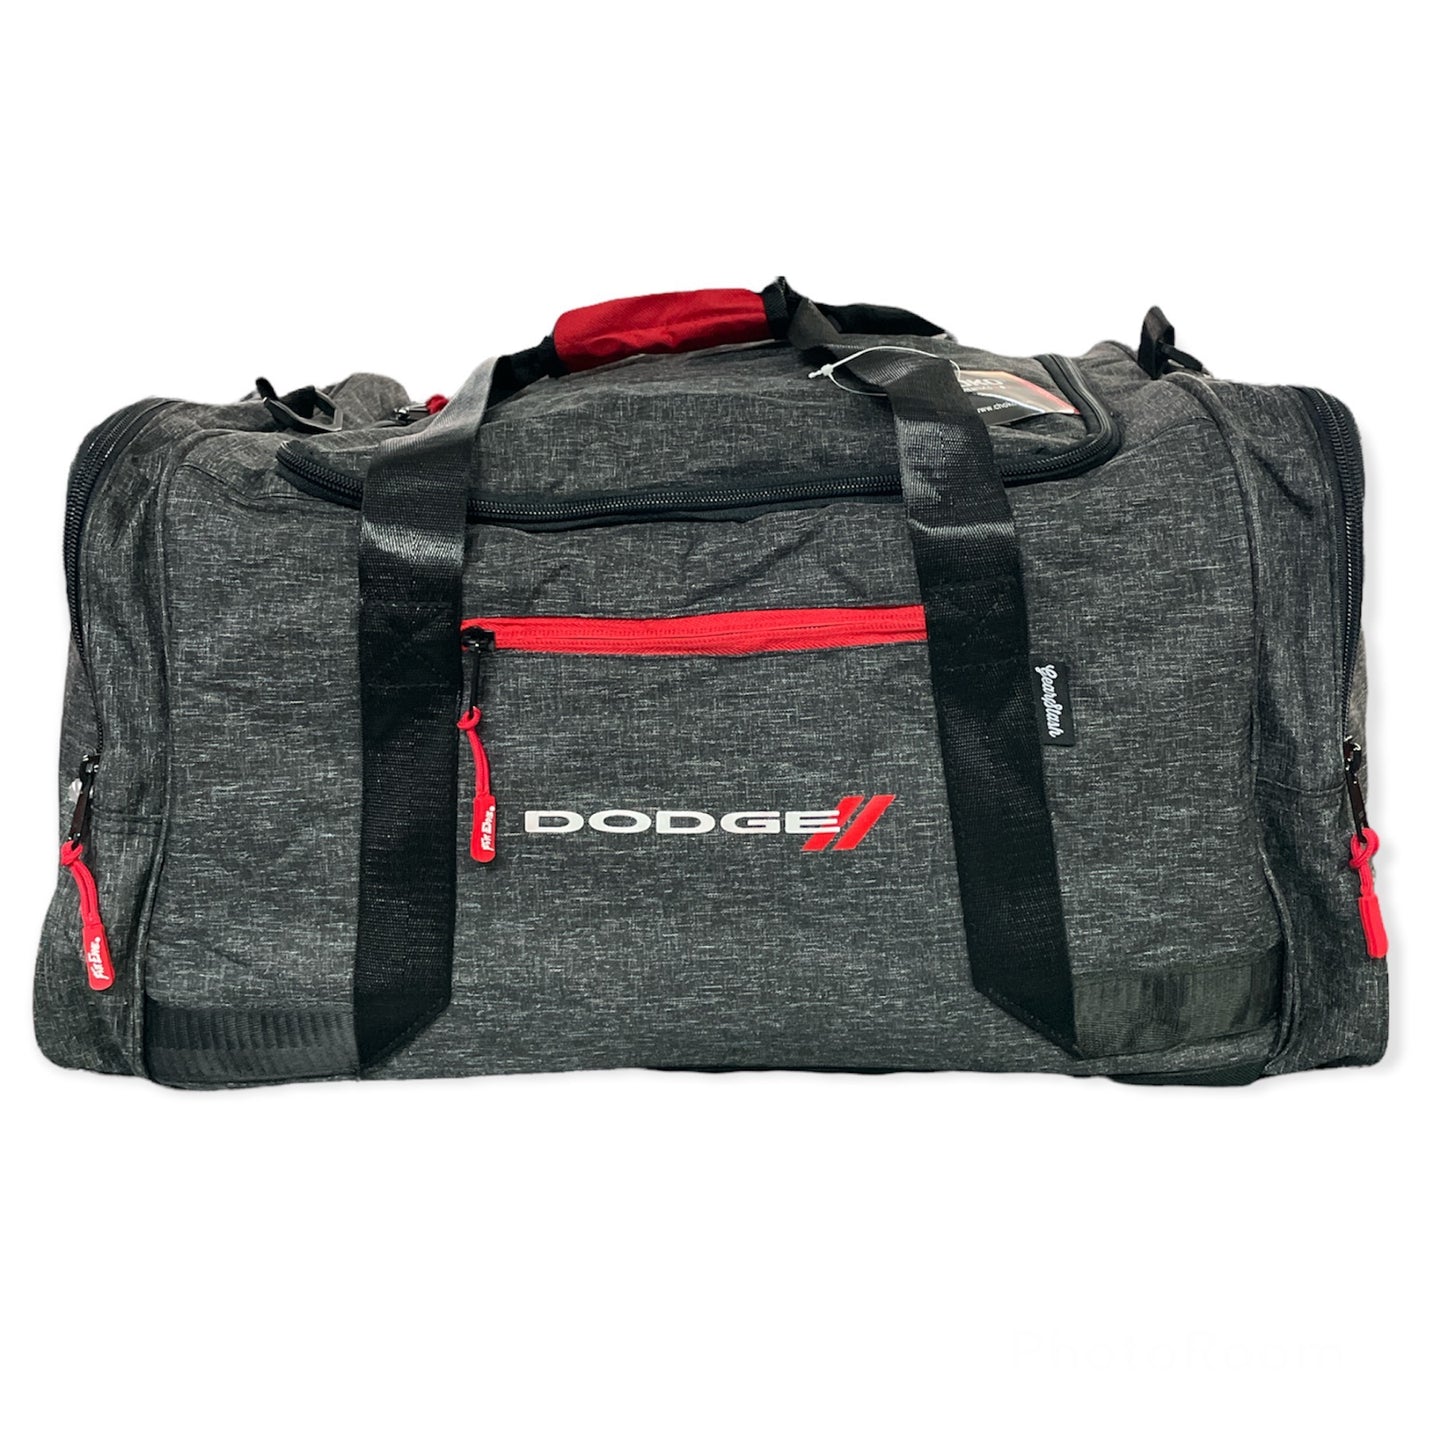 Dodge Reisetasche Sporttasche Duffel Bag mit Dodge Logo Dunkelgrau